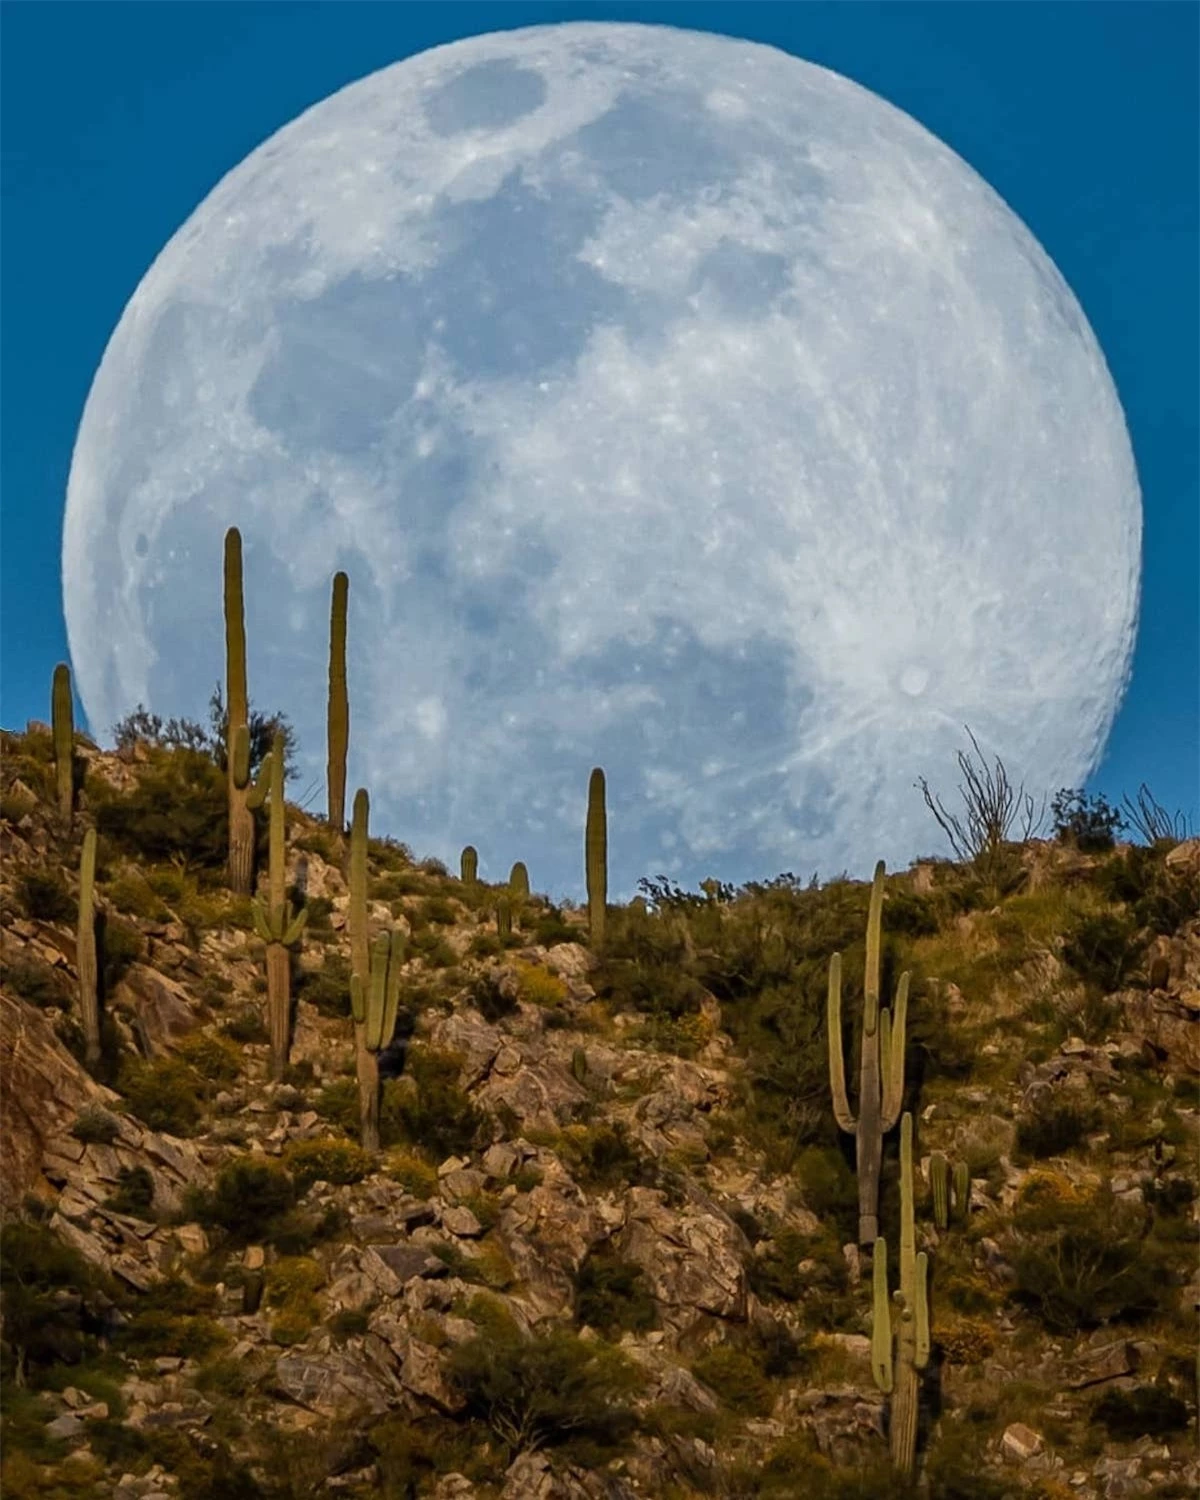 Hình ảnh siêu thực về mặt trăng khổng lồ trong sa mạc - Ảnh 6.